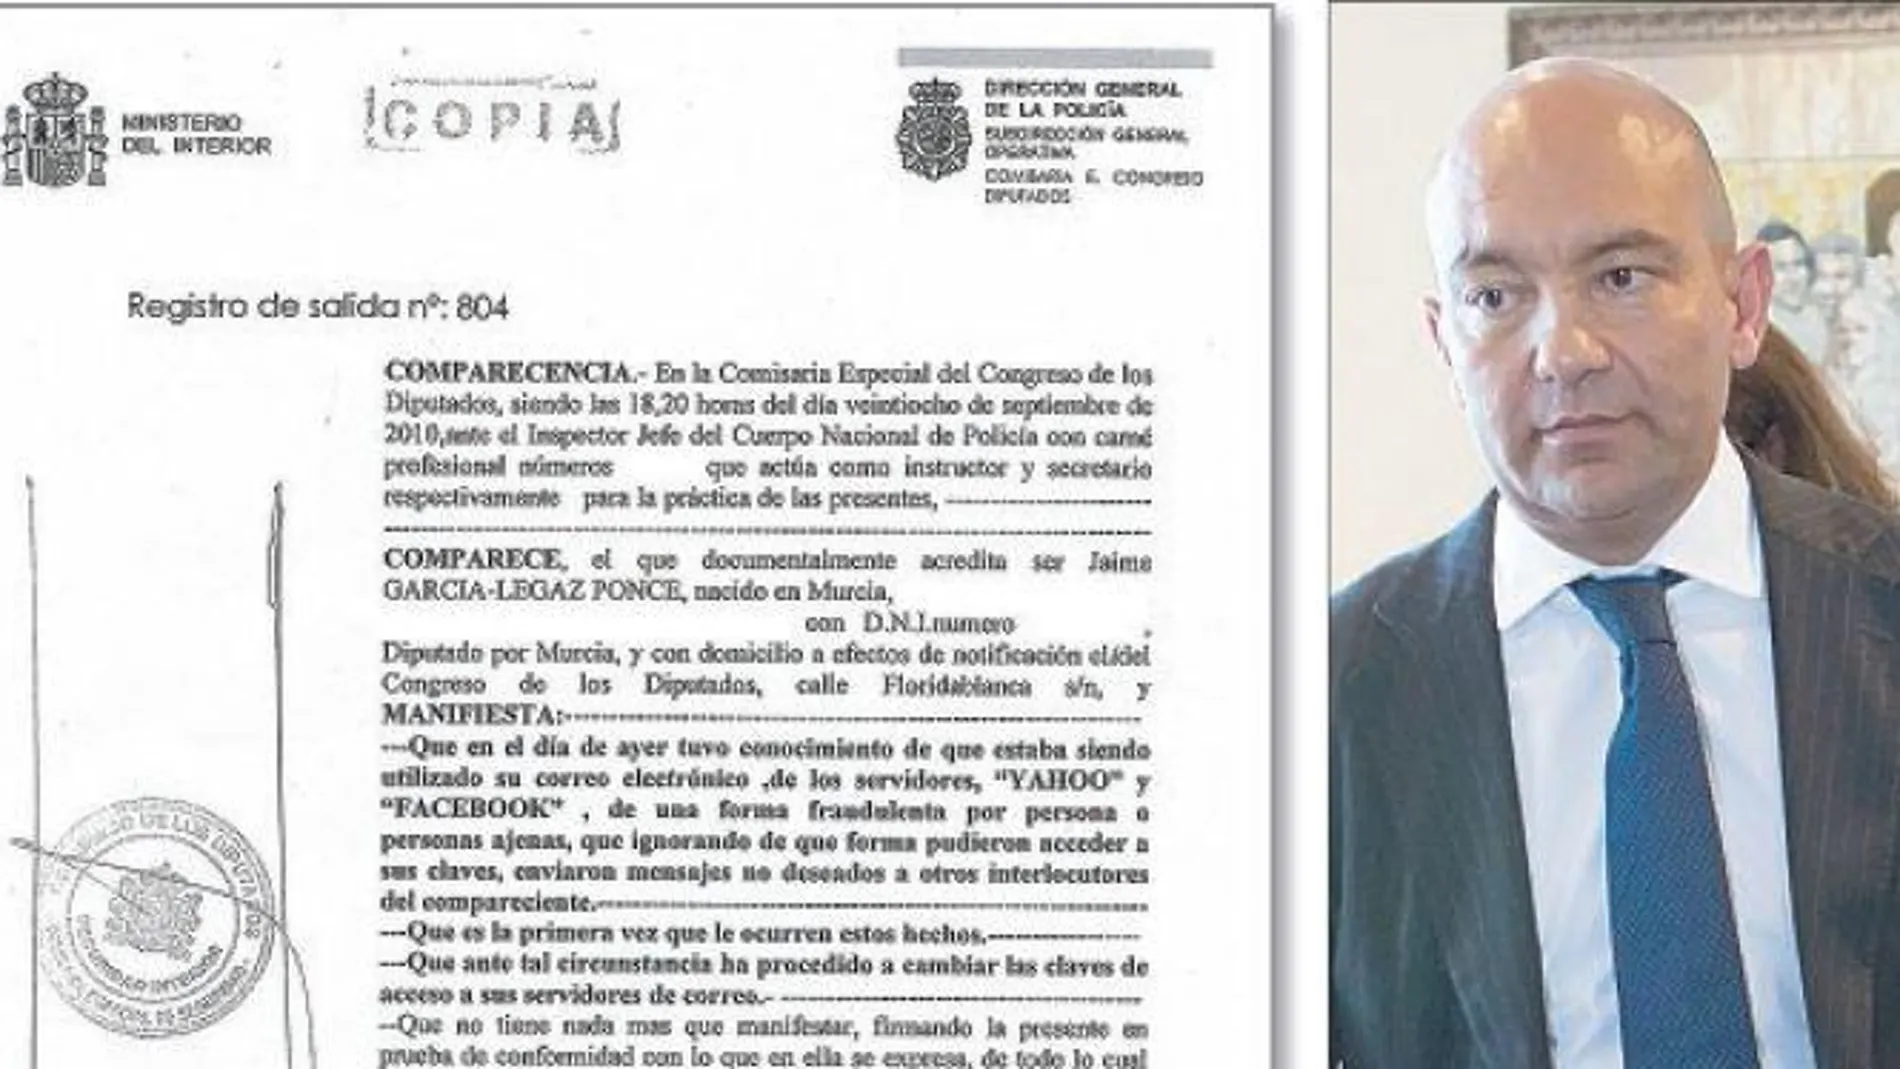 García-Legaz denunció en 2010 el uso fraudulento de sus cuentas de correo